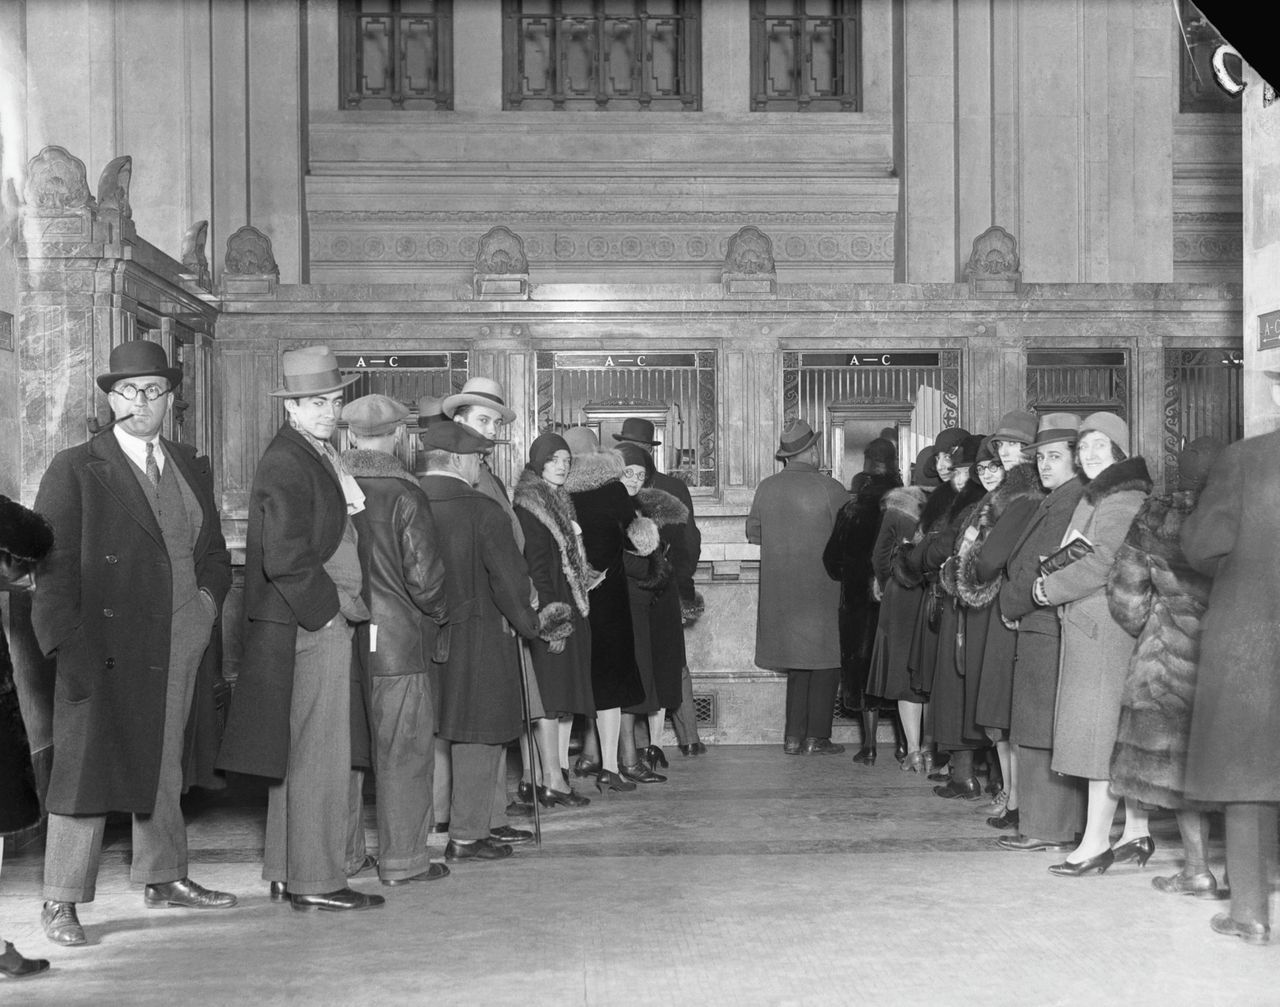 Klanten van de Bowery Savings Bank staan in 1930 in de rij om hun geld op te nemen.